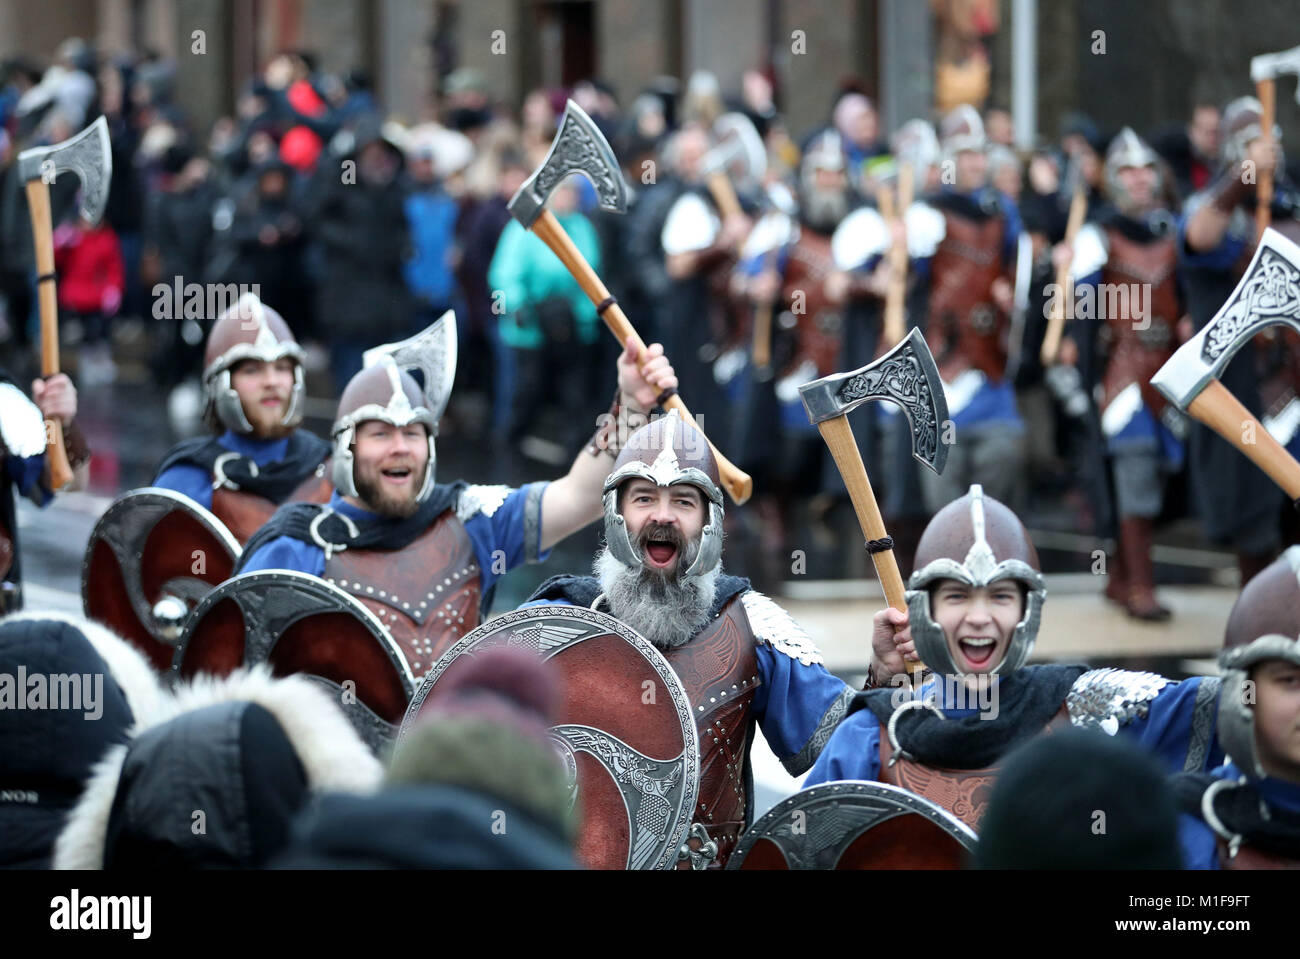 Les membres de l'équipe de Jarl vêtus de costumes Viking marche dans les rues de Lerwick sur les îles Shetland pendant le Festival Up Helly Aa Viking. Banque D'Images